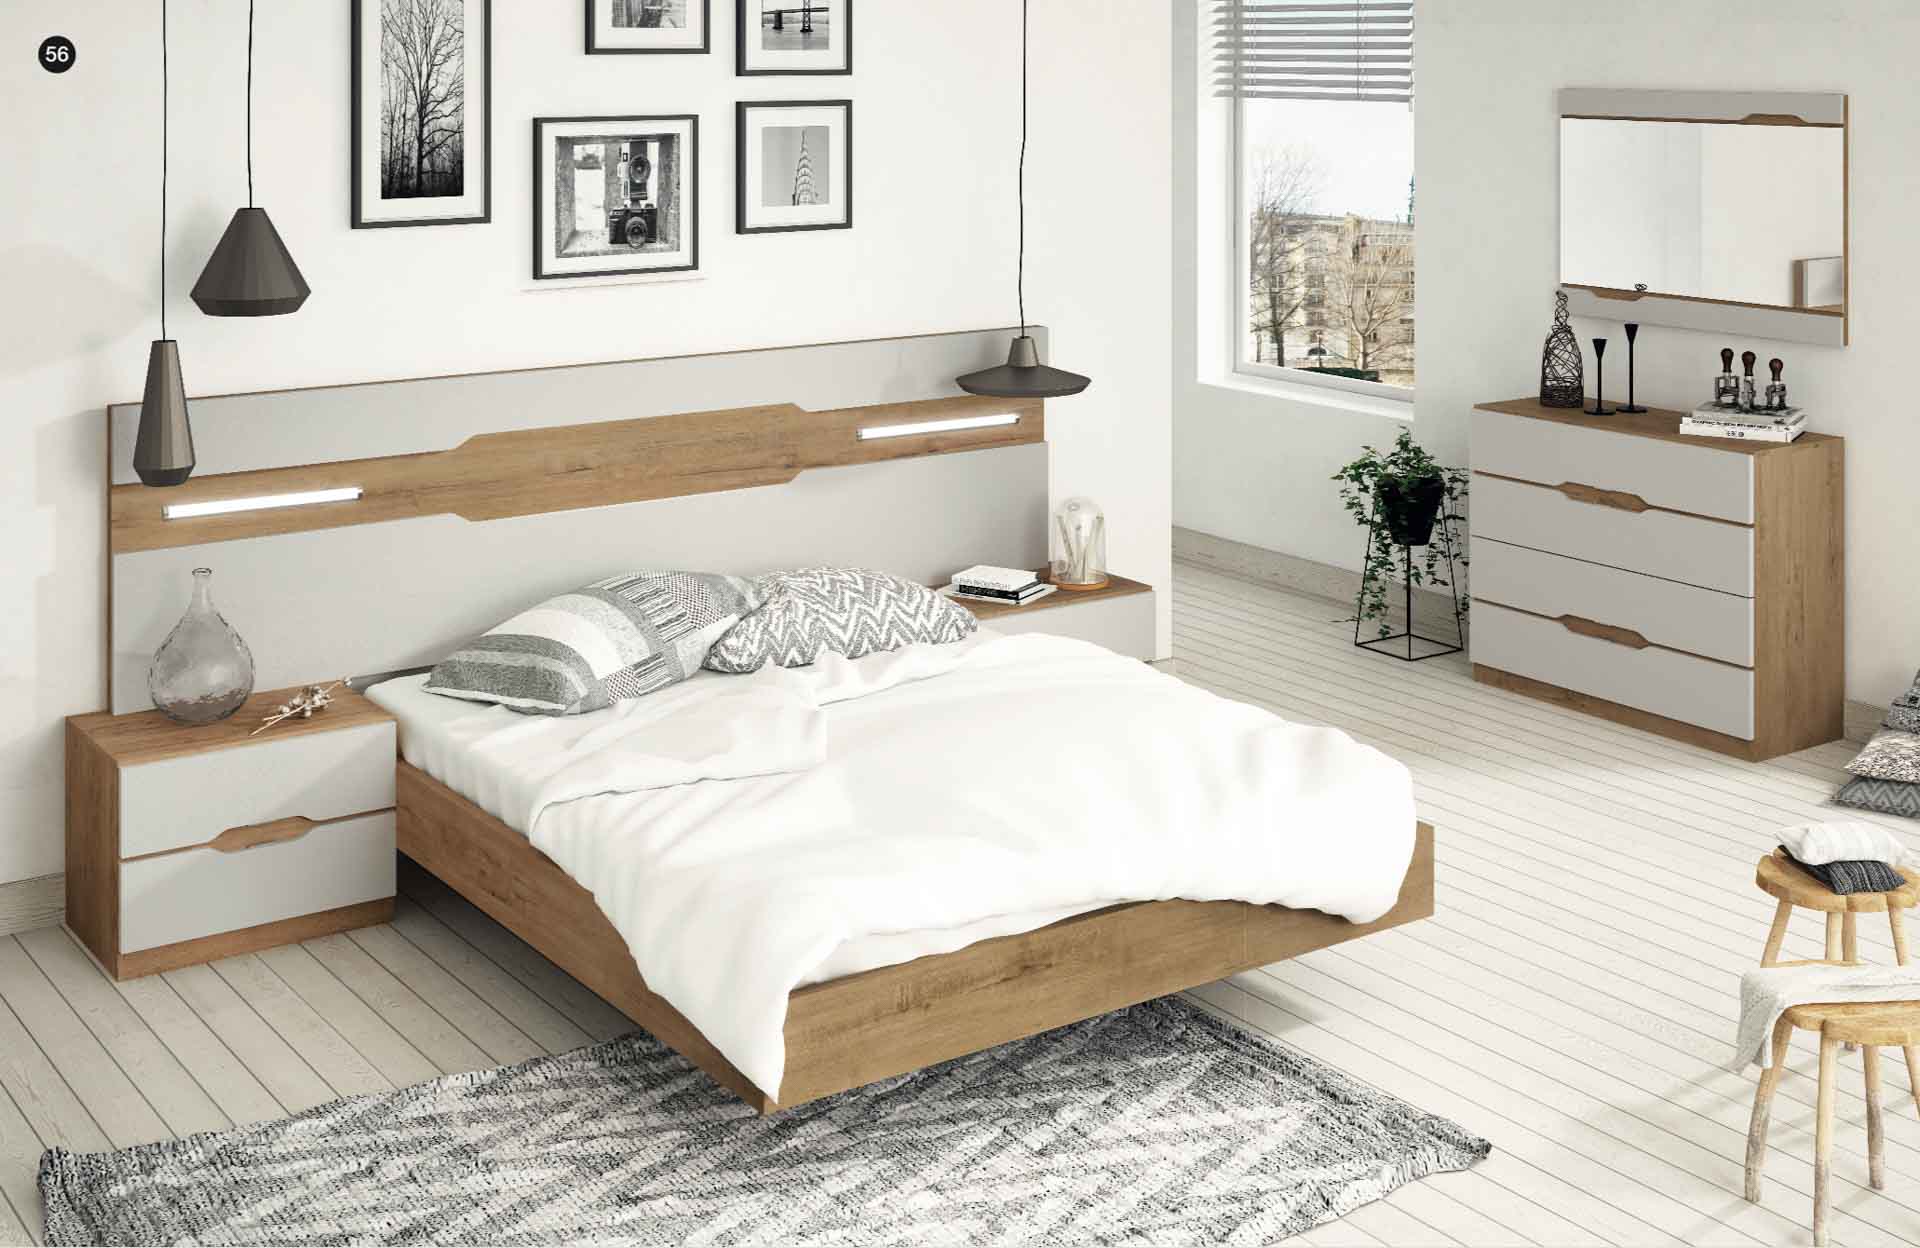 Diseño de mobiliario de dormitorio 30